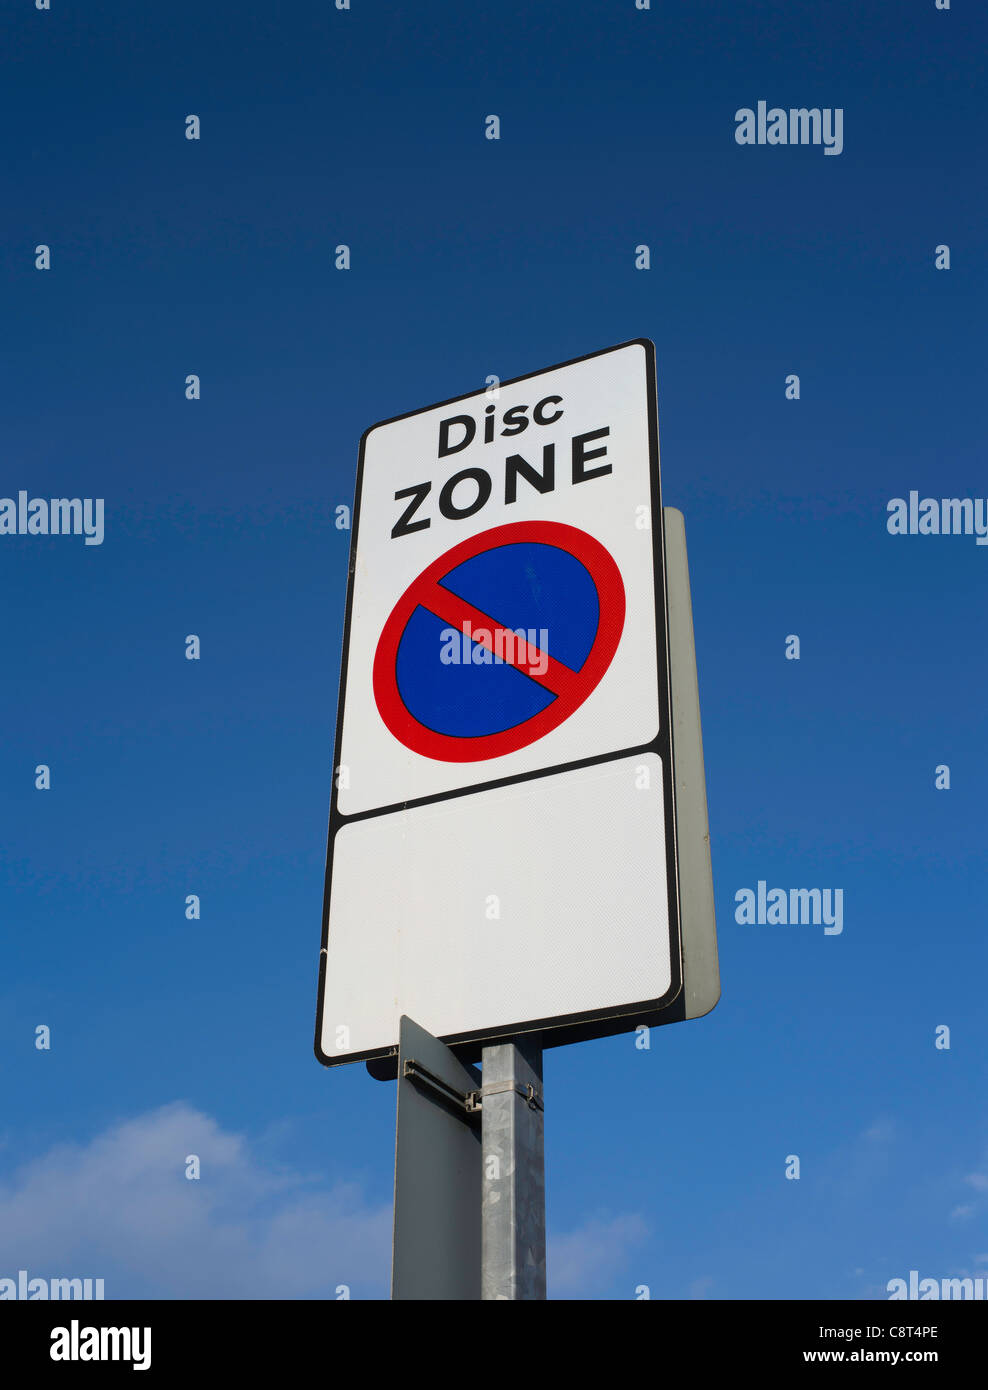 panneau de signalisation de zone de disque dh zone de disque de stationnement au panneau de signalisation du Royaume-Uni zone de signalisation routière Banque D'Images